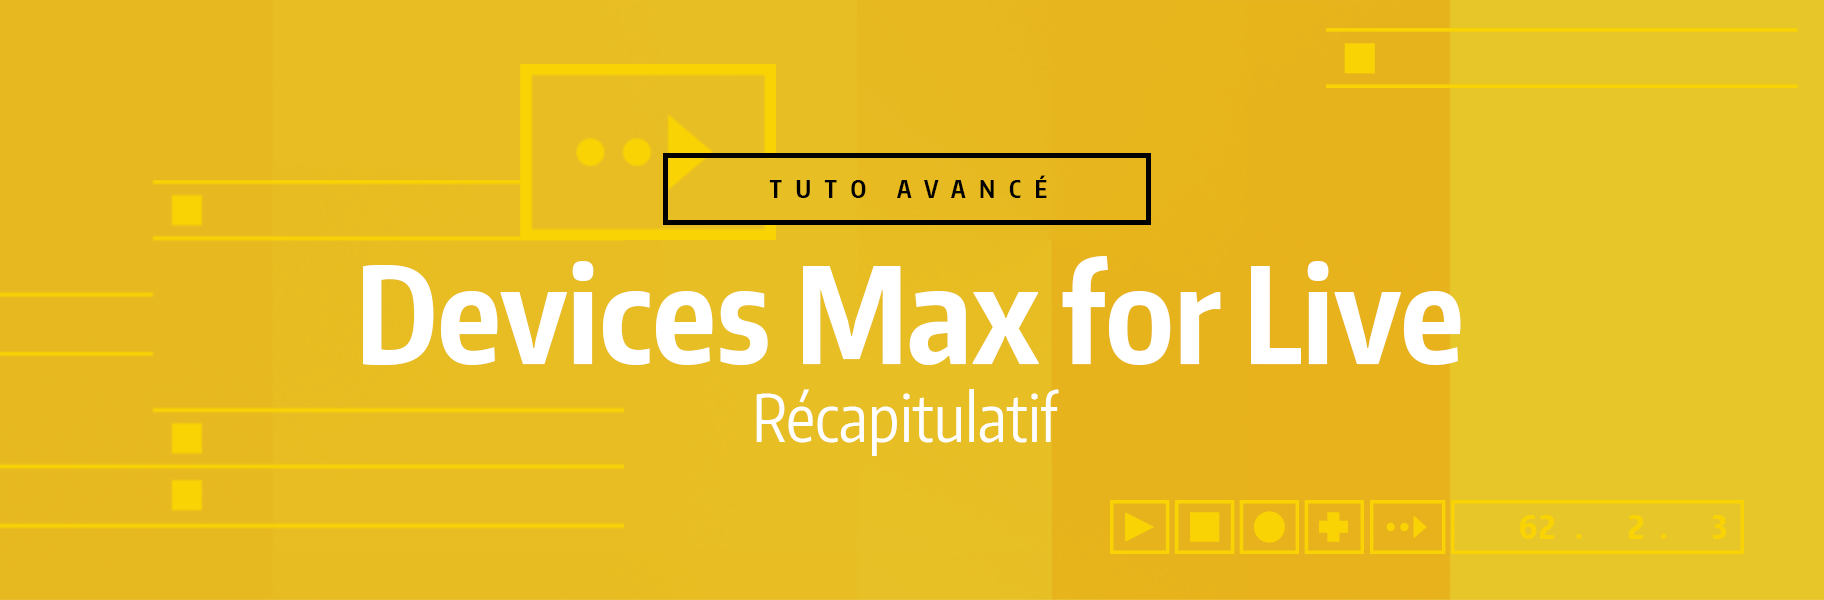 Tutoriel Ableton Live - Devices Max for Live - Récapitulatif